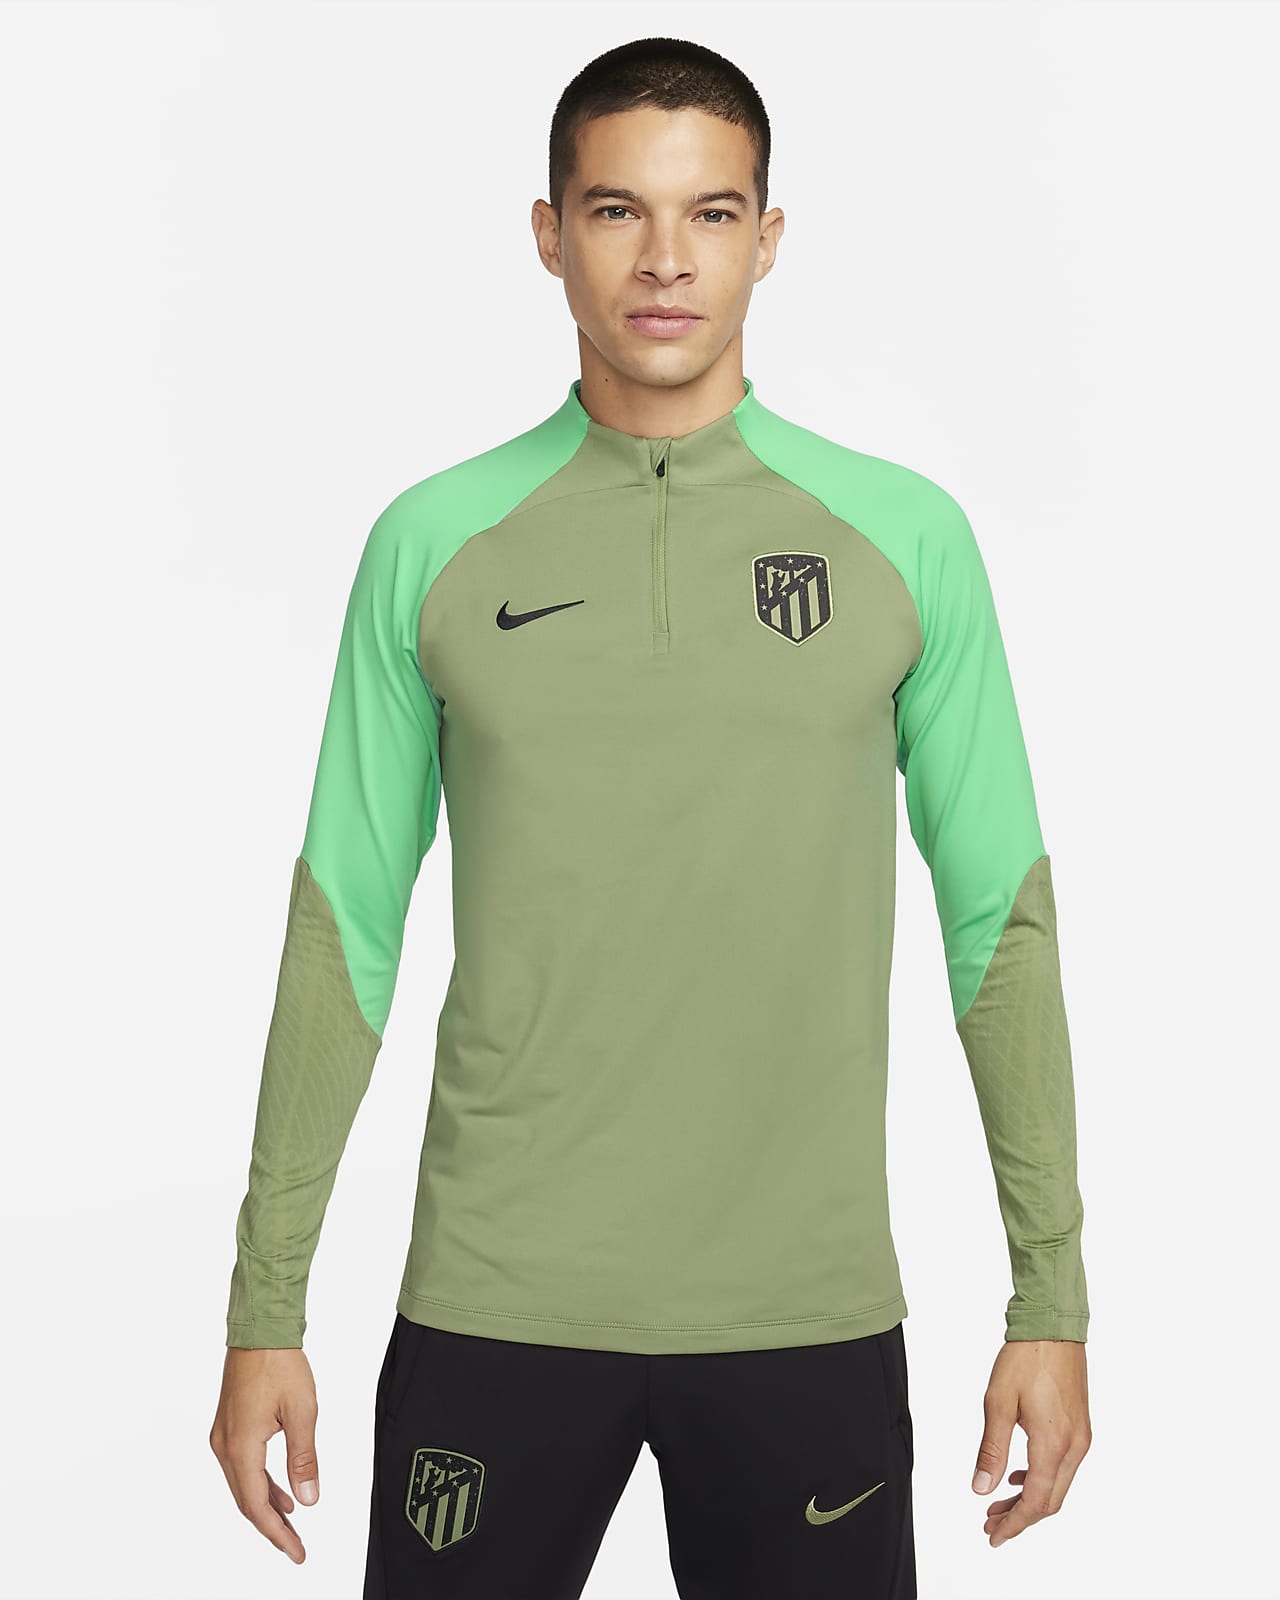 Regalos Nike By You Atlético de Madrid Equipaciones y camisetas